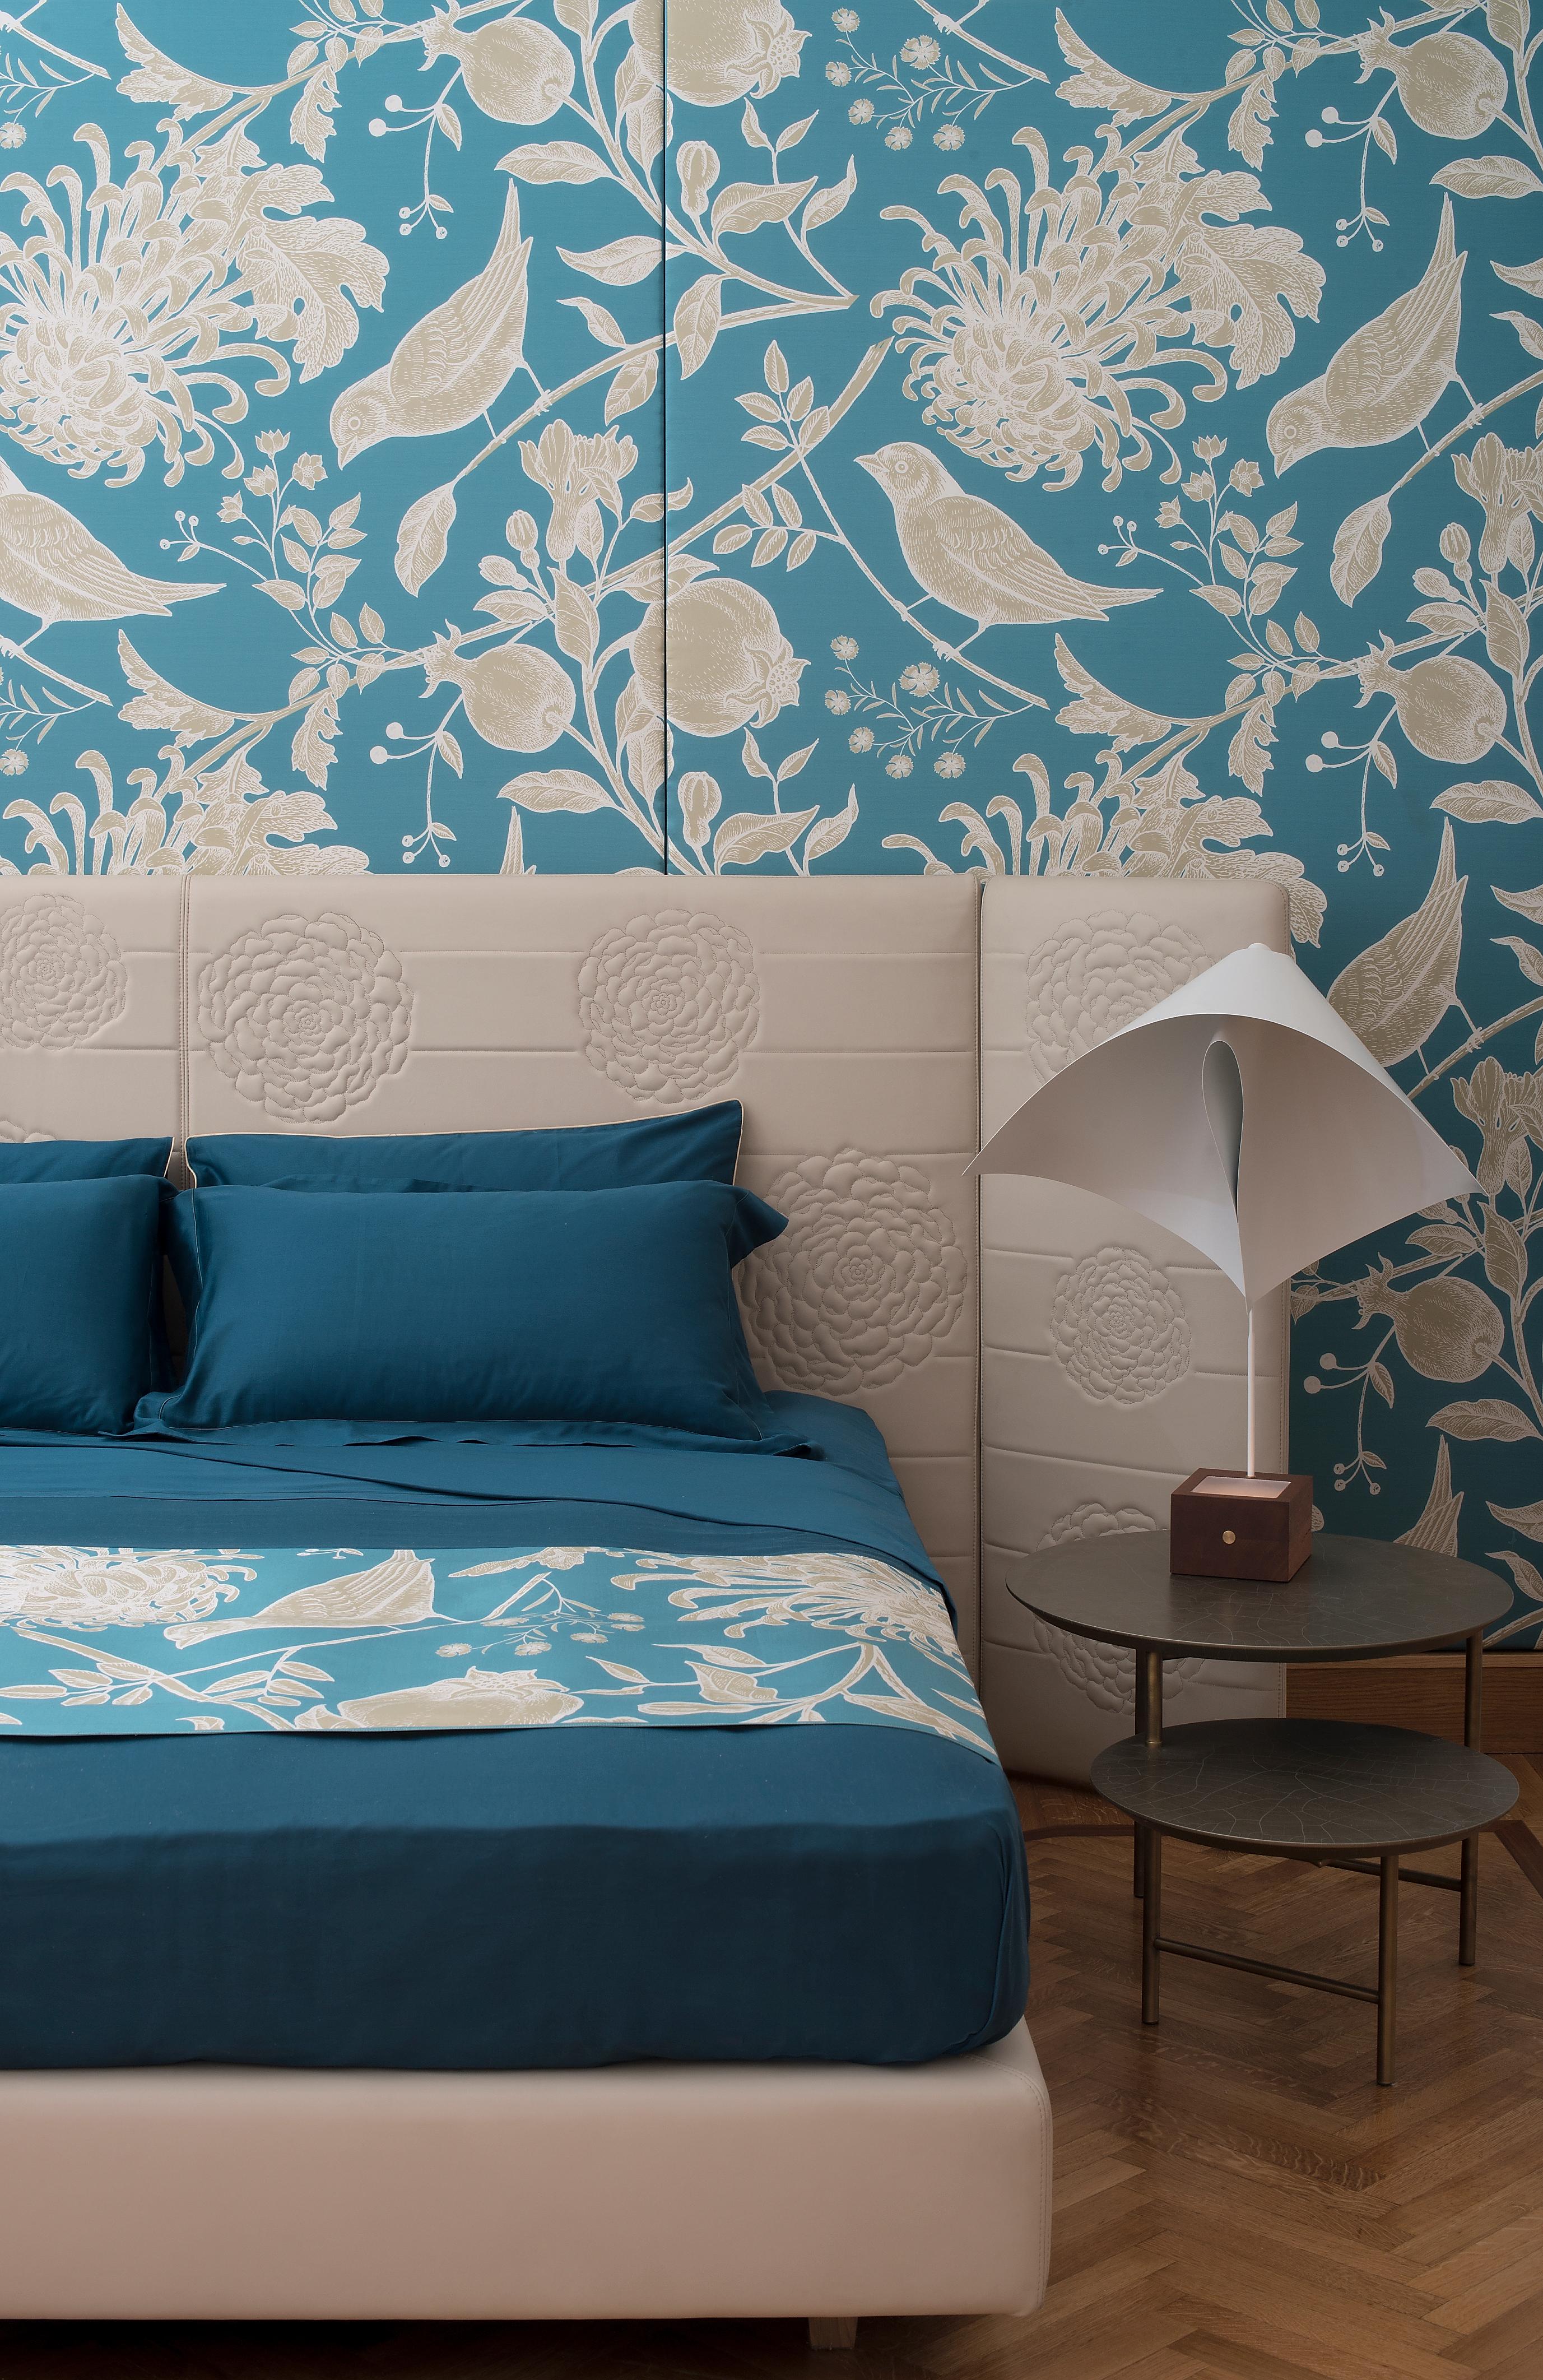 Ce superbe ensemble pour le lit fait partie de la série Cordonetto. Il se distingue par ses couleurs vives et un décor cousu ton sur ton qui court parallèlement au périmètre de ses pièces. Complément polyvalent d'un lit classique ou contemporain,